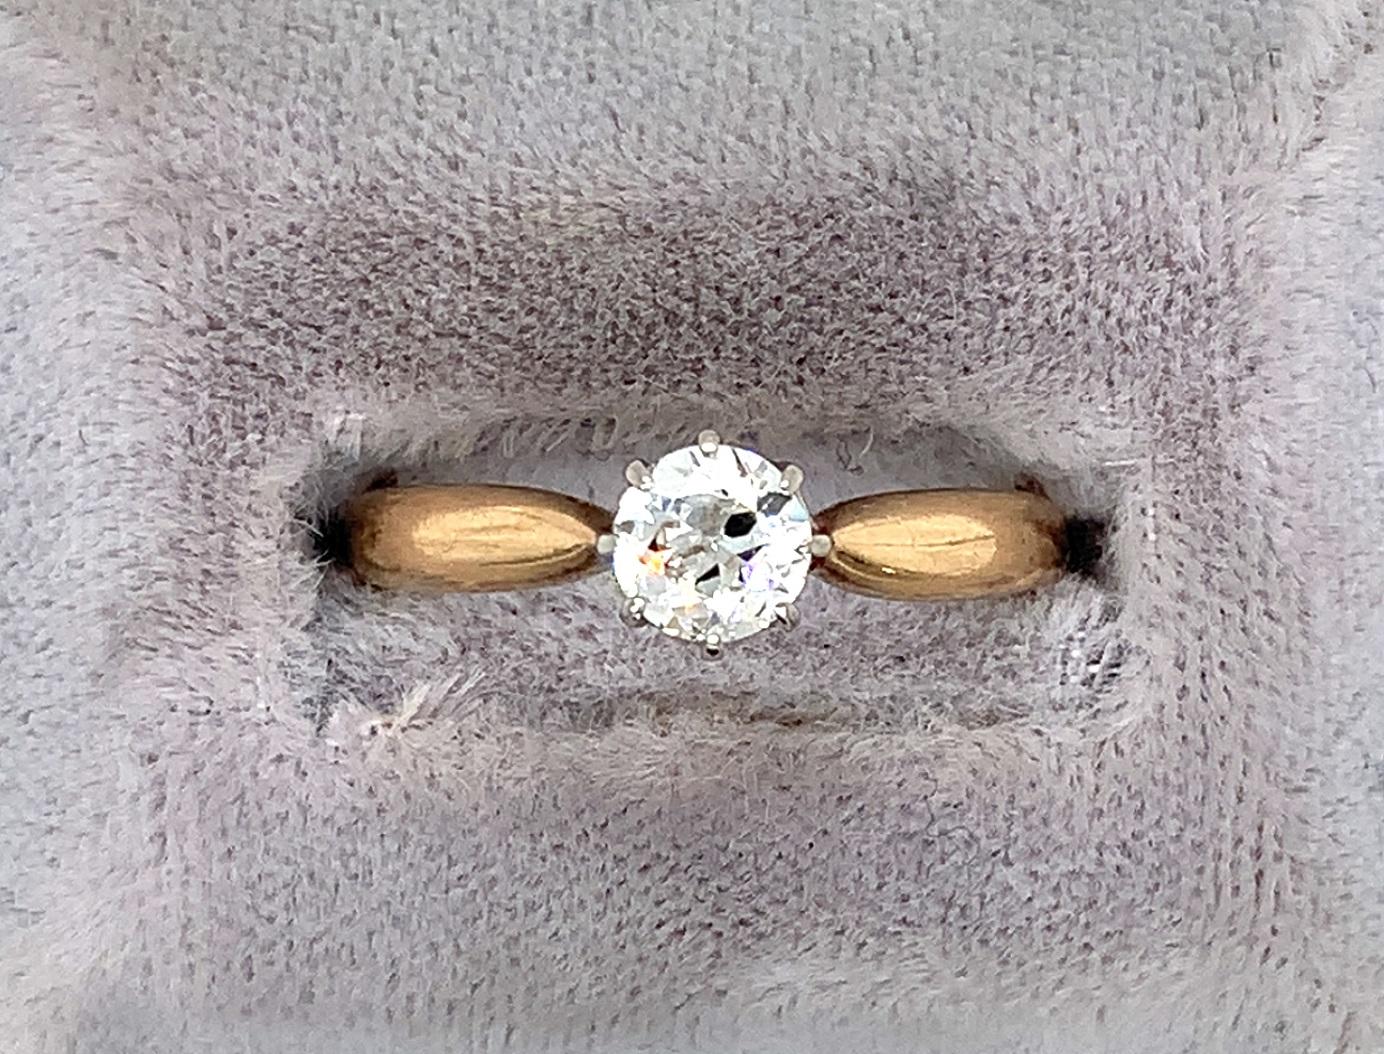 Bague en or jaune 14 carats ornée d'un diamant de taille européenne pesant environ 1/2 carat.  Le diamant mesure 5,2 mm et est serti dans une tête à 8 branches en or blanc 18K qui ressemble à une couronne.  Le diamant est de pureté I-1 et de couleur